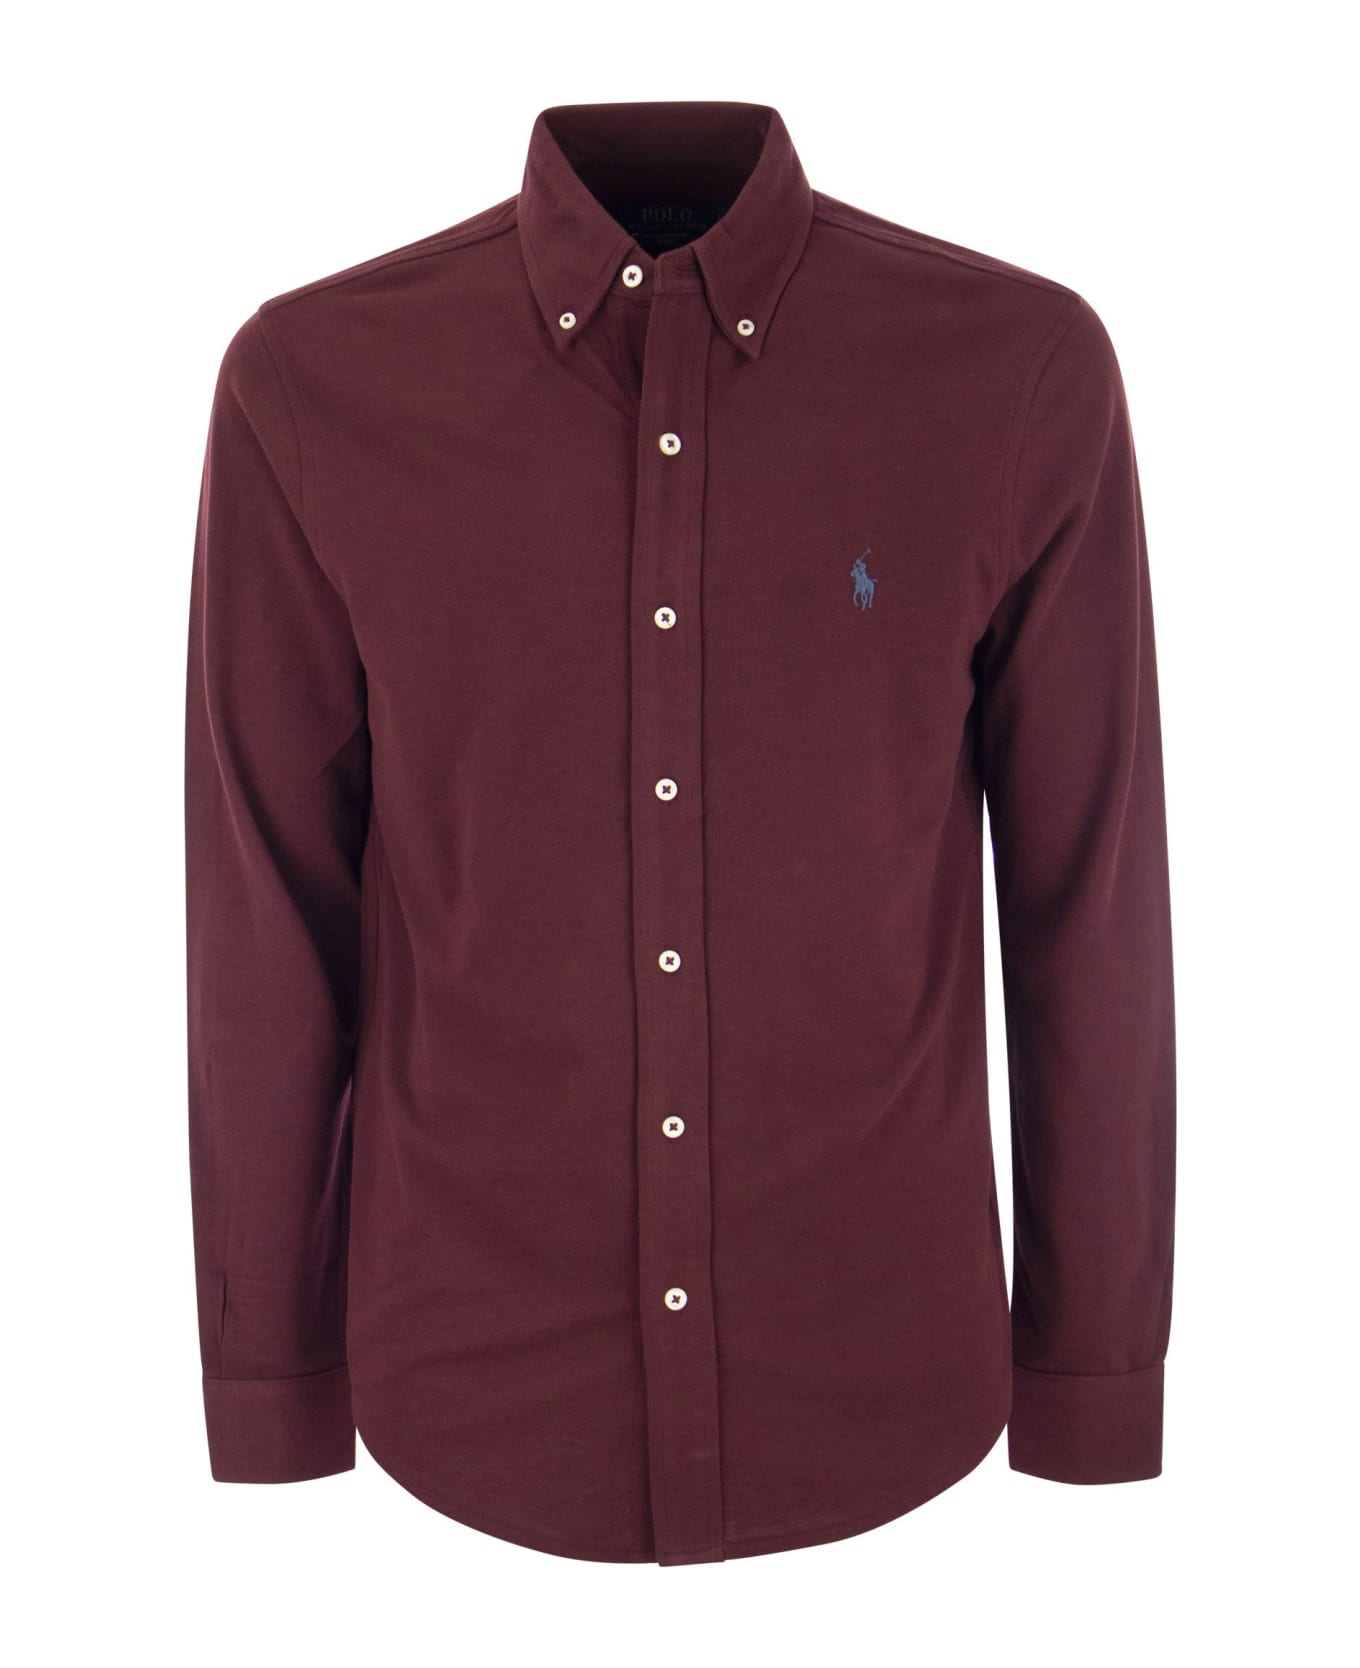 Polo Ralph Lauren Ultralight Pique Shirt - Bordeaux シャツ